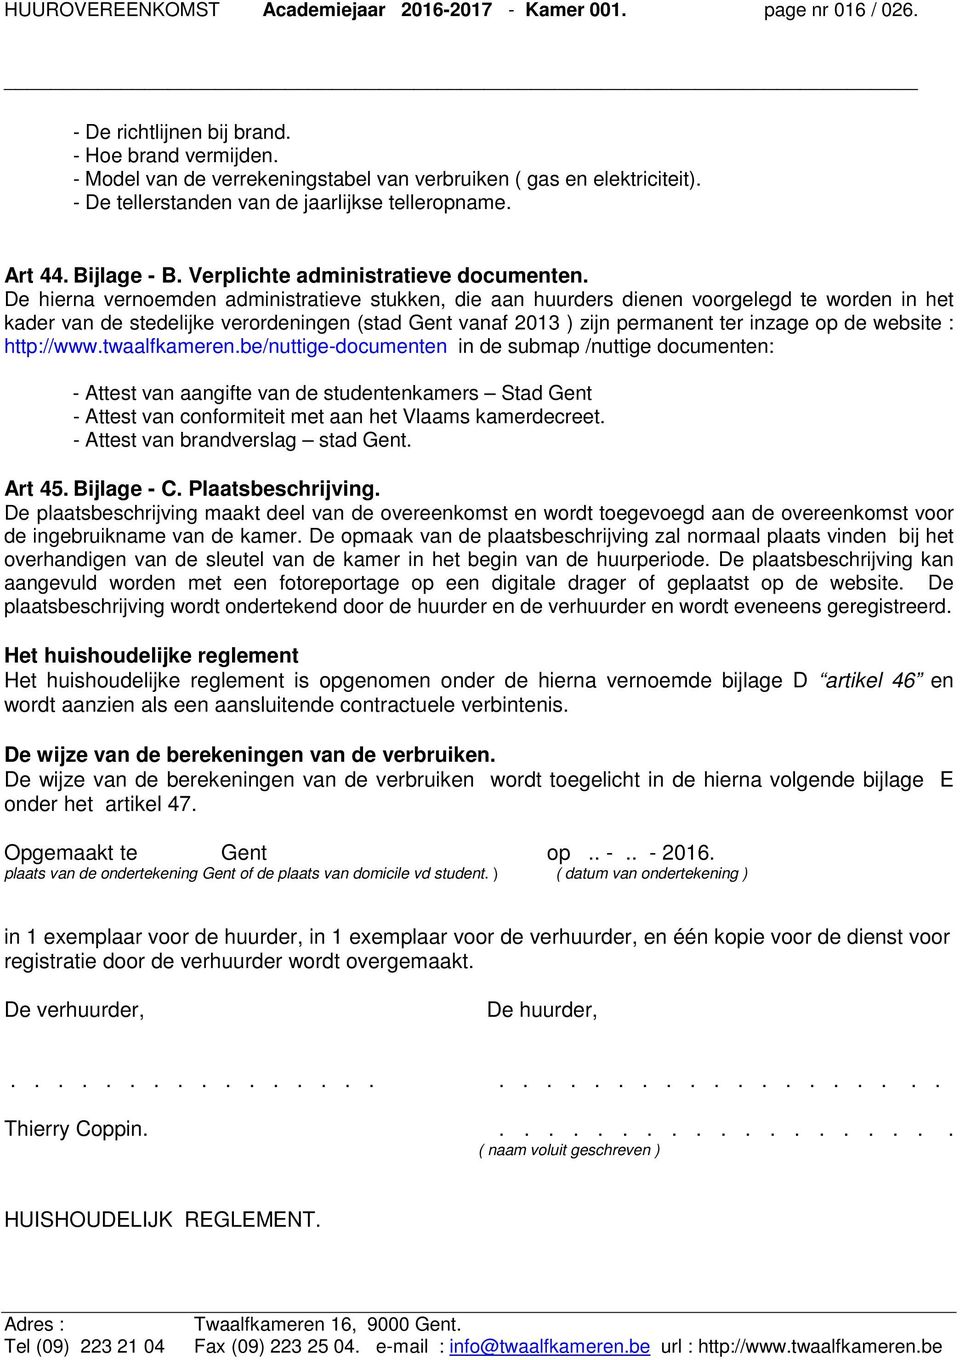 De hierna vernoemden administratieve stukken, die aan huurders dienen voorgelegd te worden in het kader van de stedelijke verordeningen (stad Gent vanaf 2013 ) zijn permanent ter inzage op de website